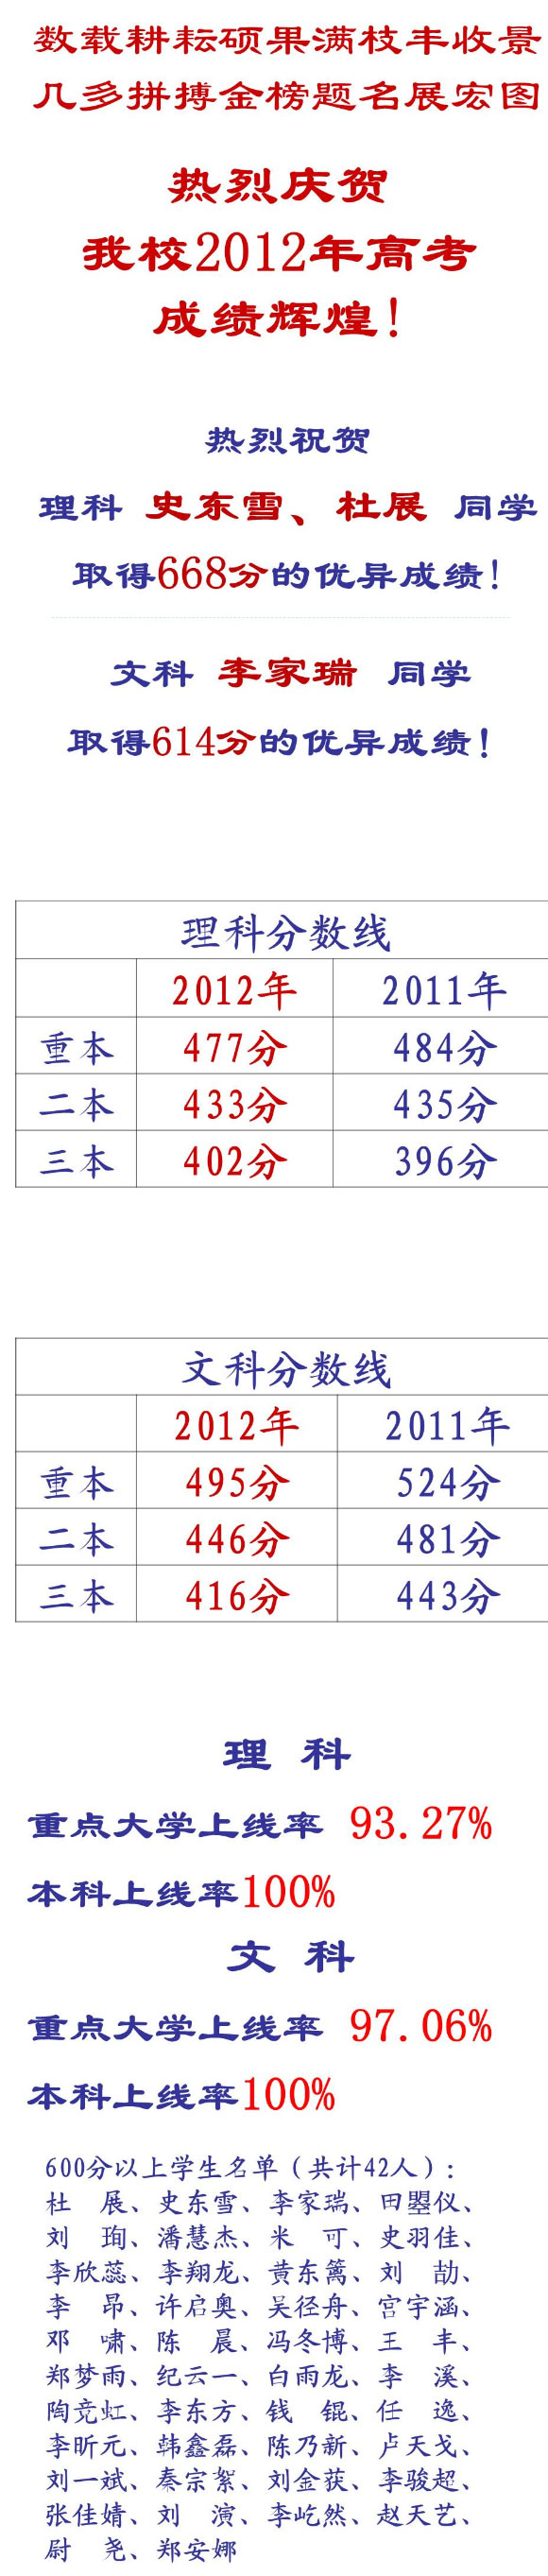 北京市中关村中学发布2012高考成绩喜报2